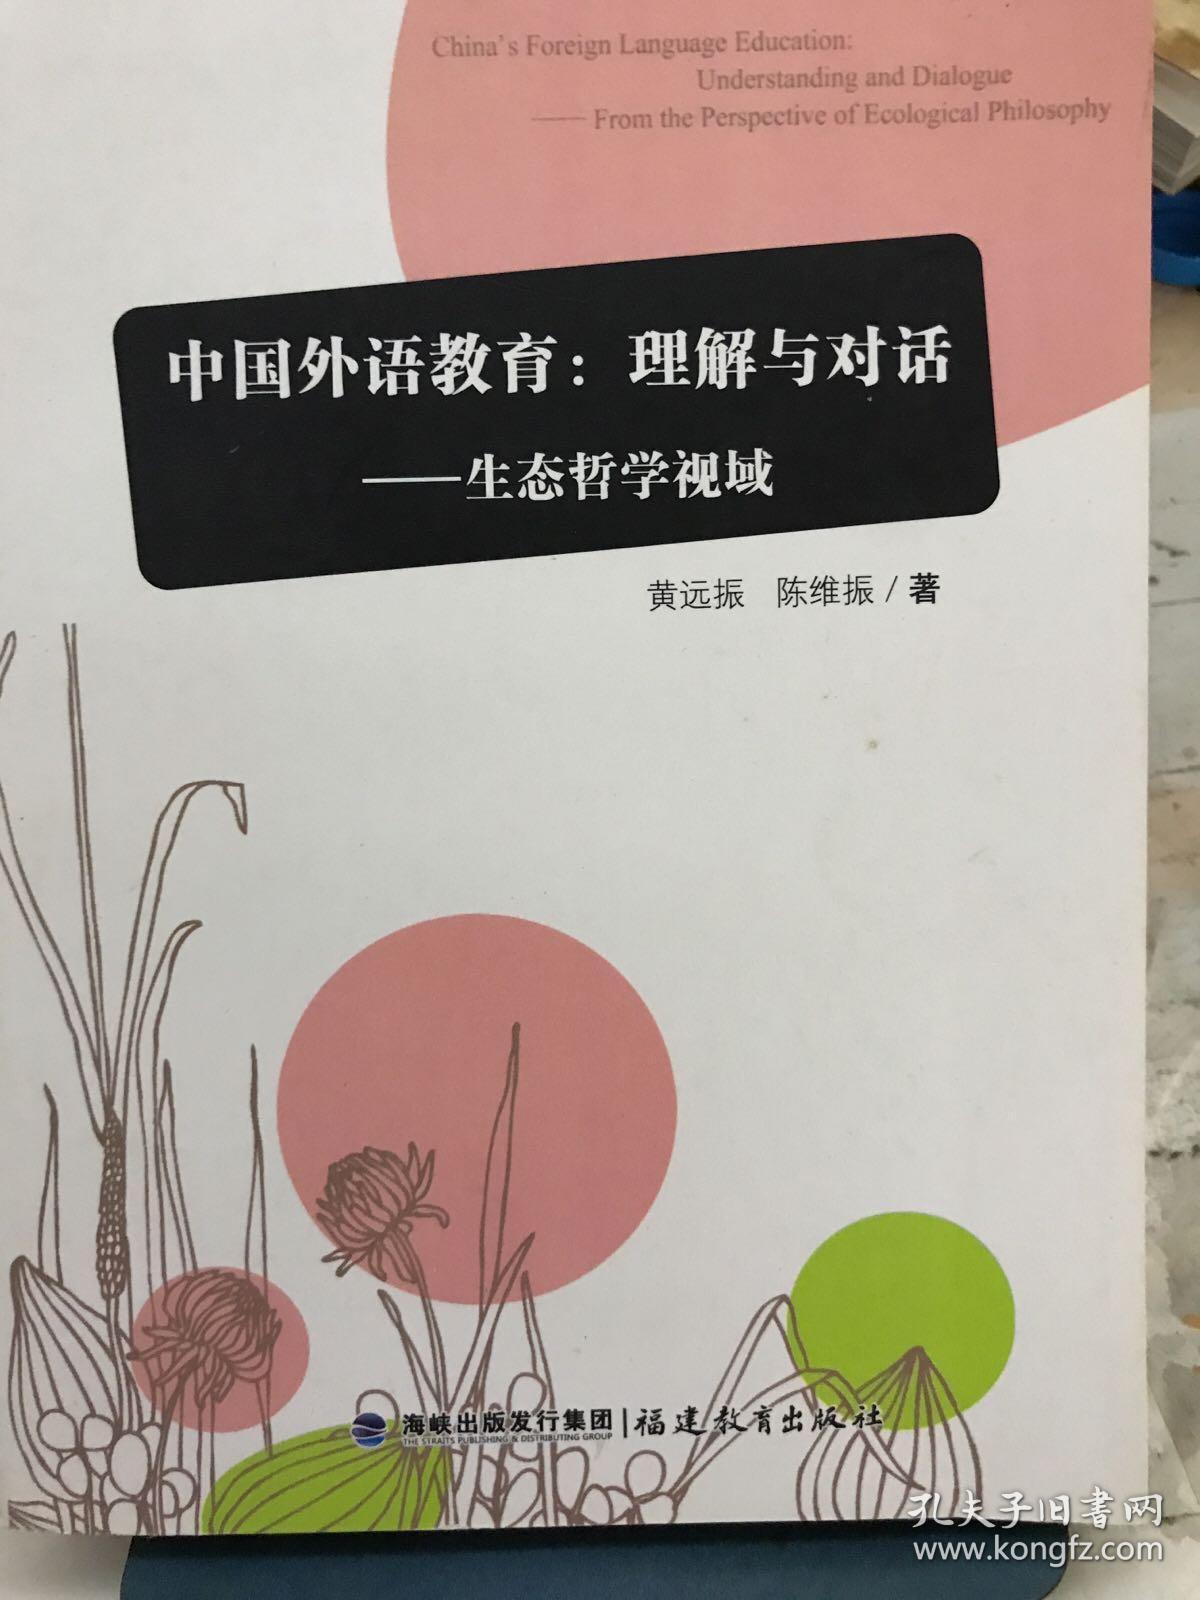 中国外语教育：理解与对话生态哲学视域